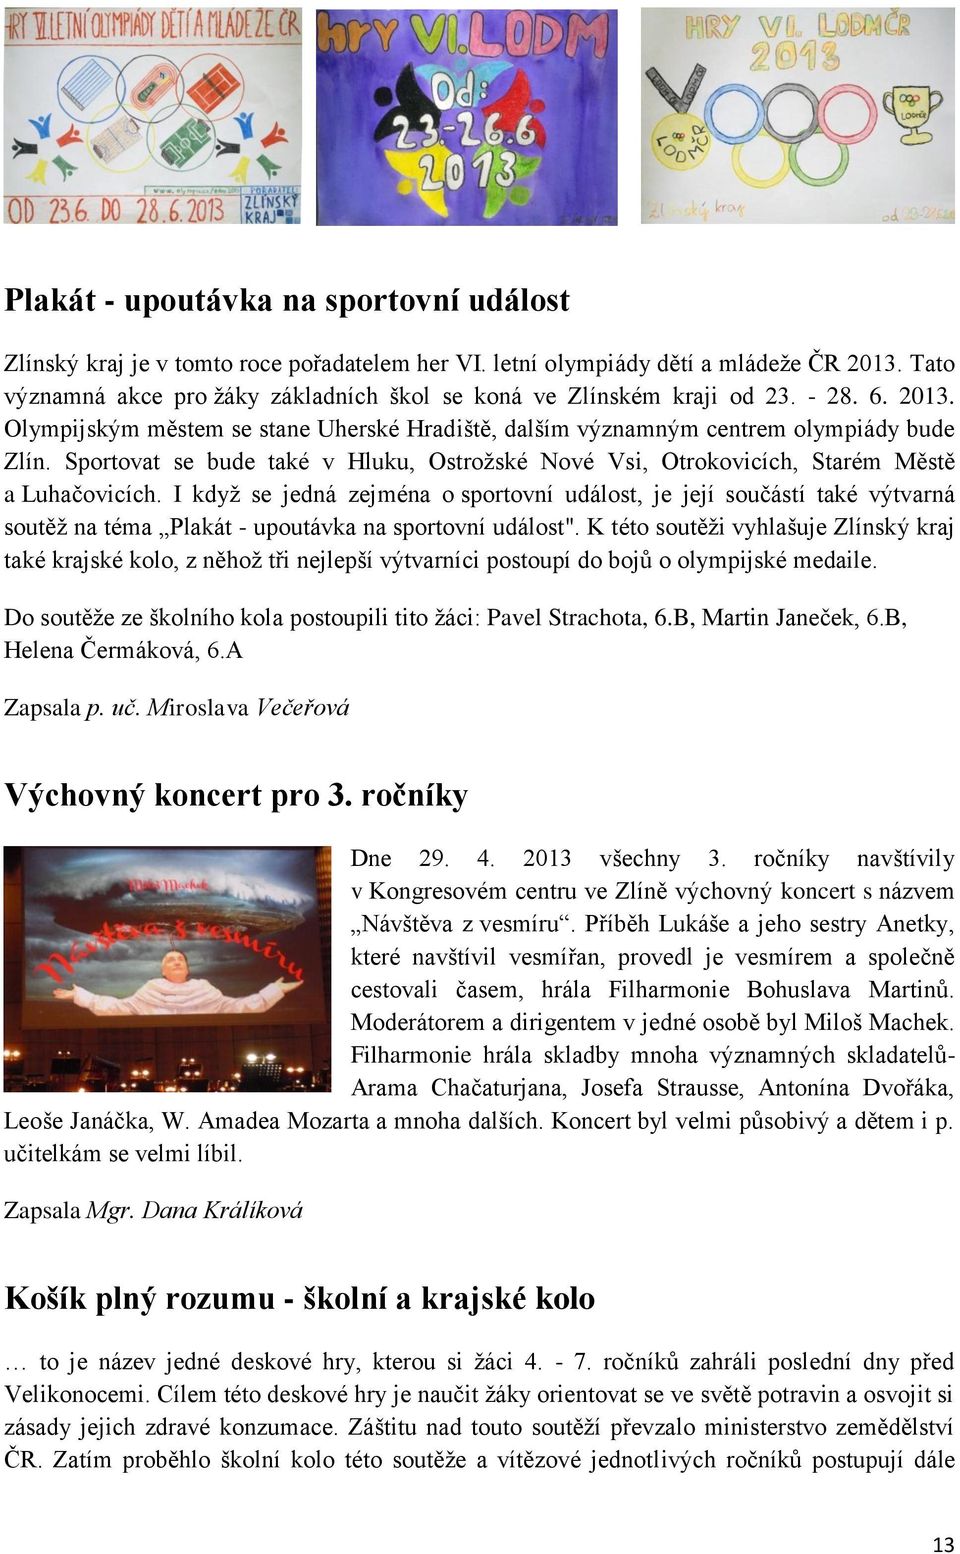 Základní škola T. G. Masaryka v Otrokovicích. Školní časopis - PDF Free  Download